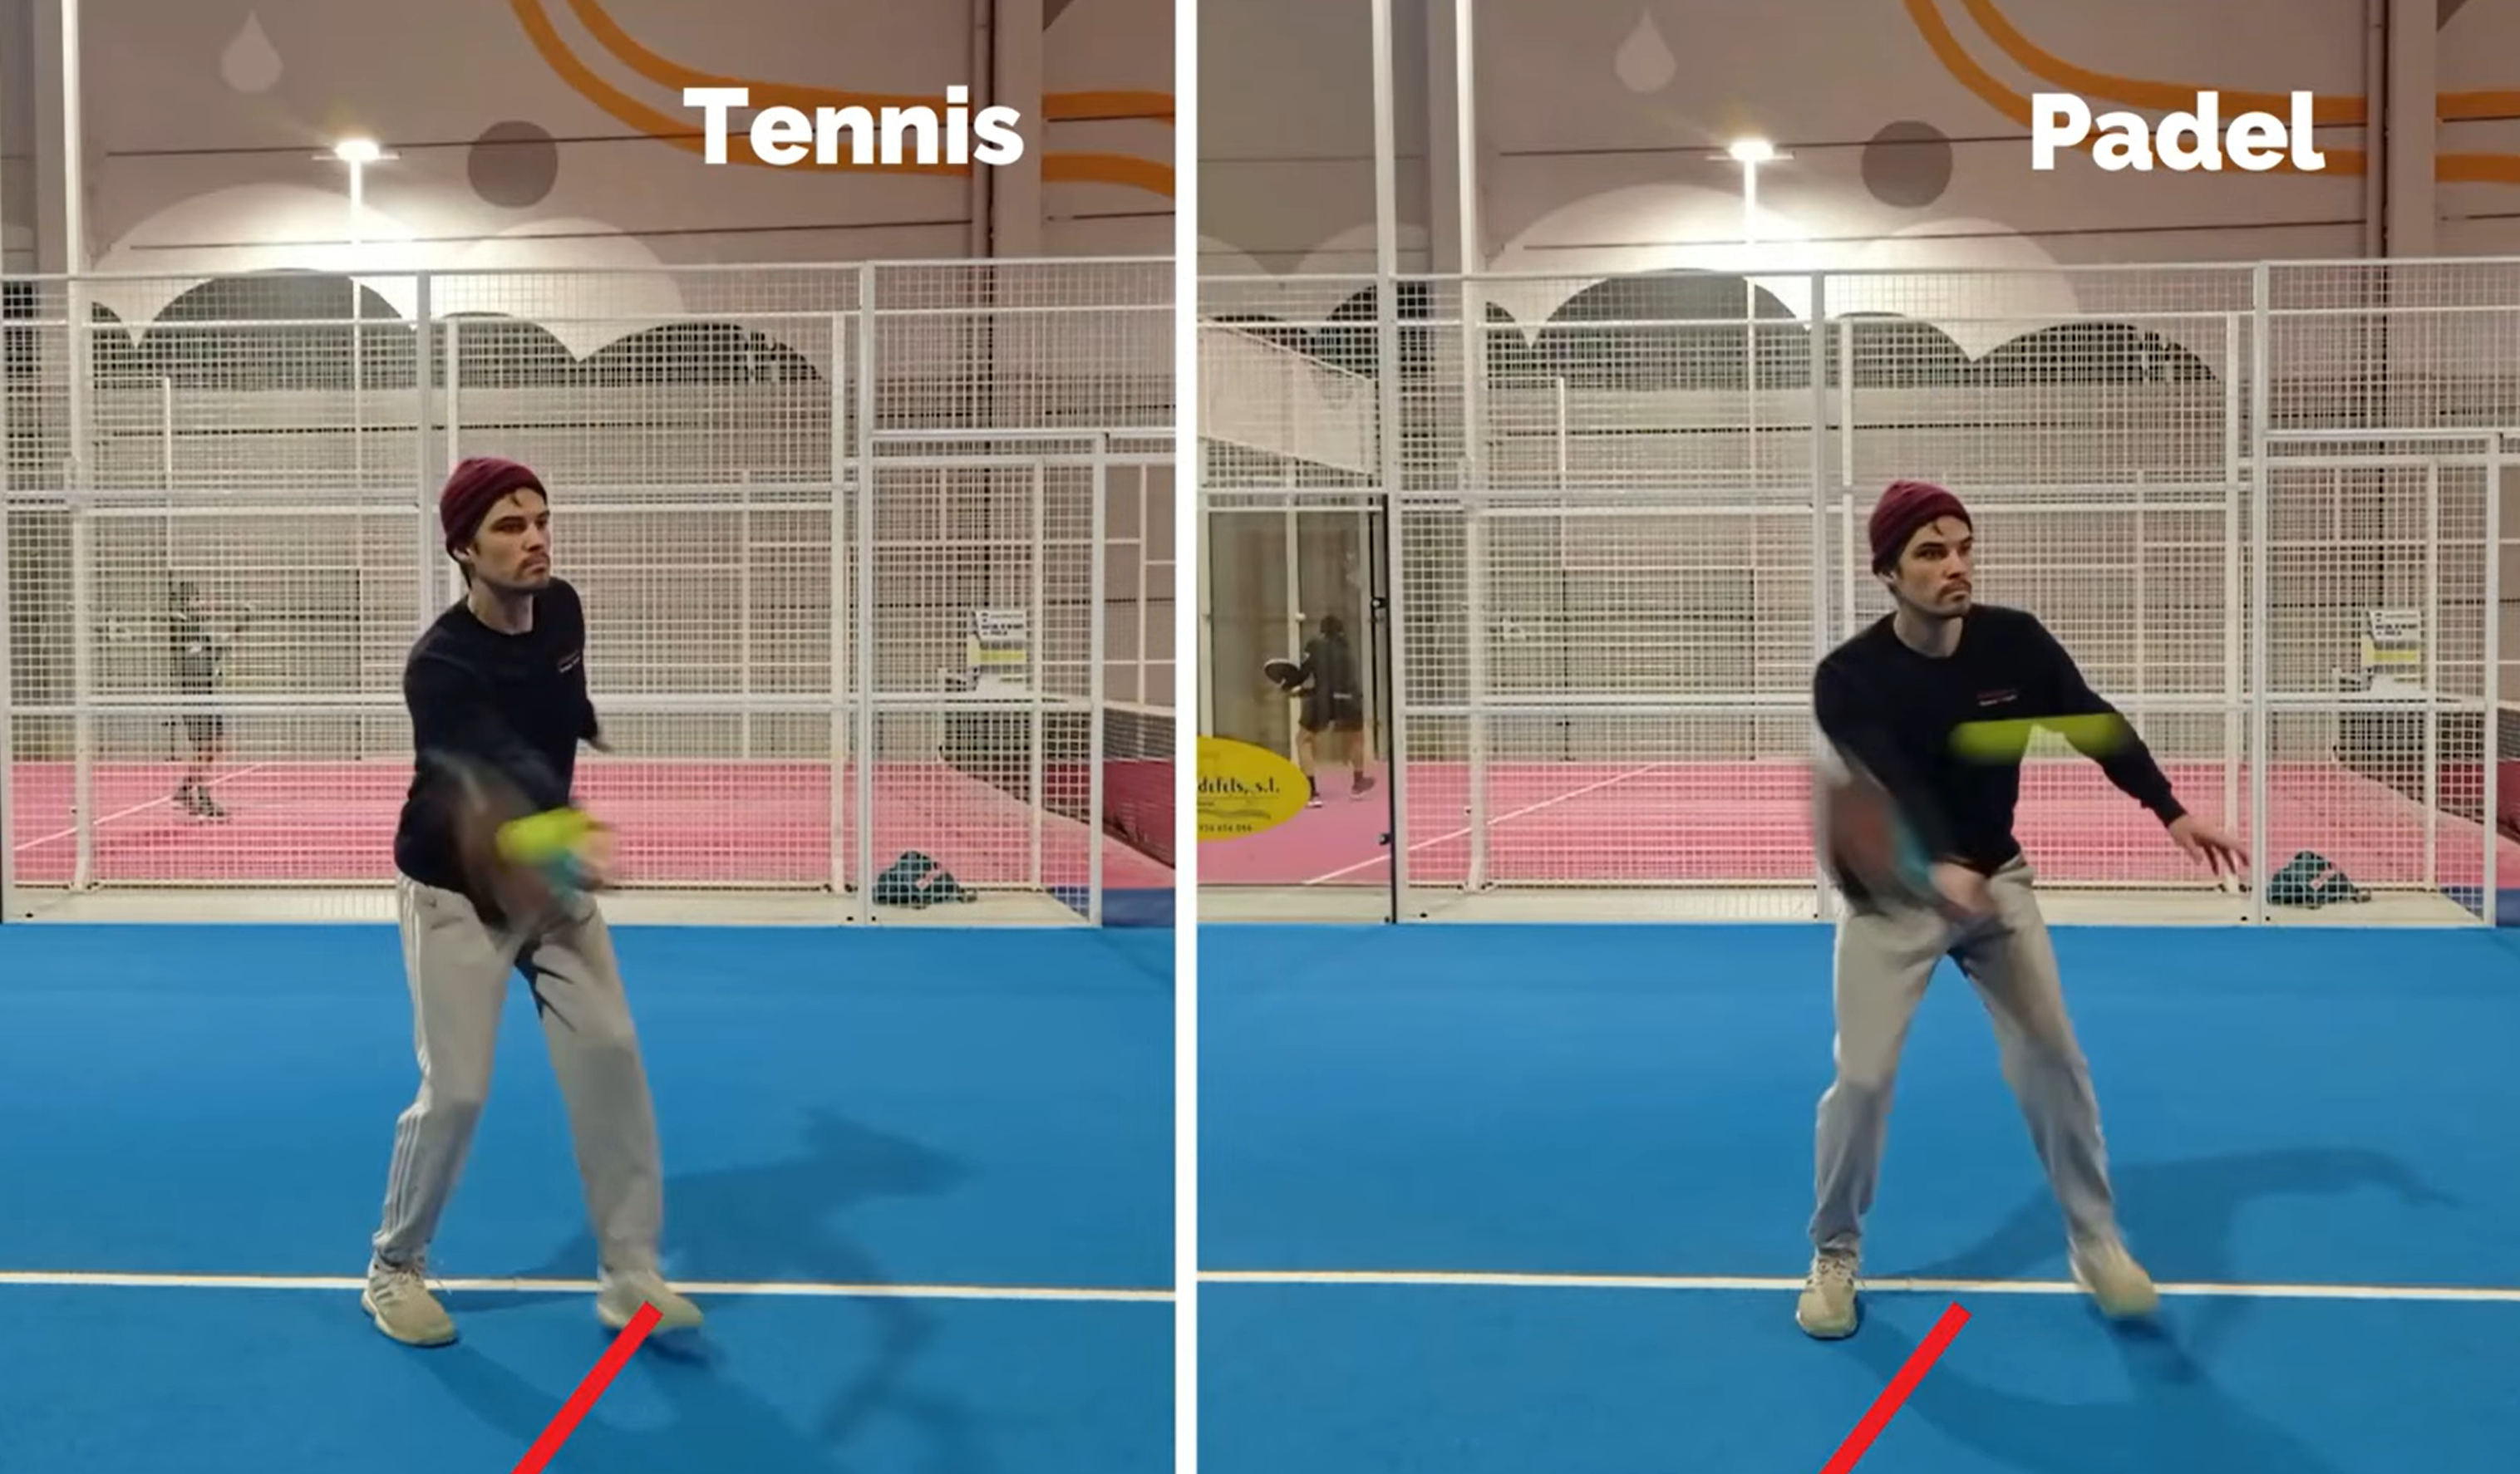 3 网球截击与网球截击的区别 padel